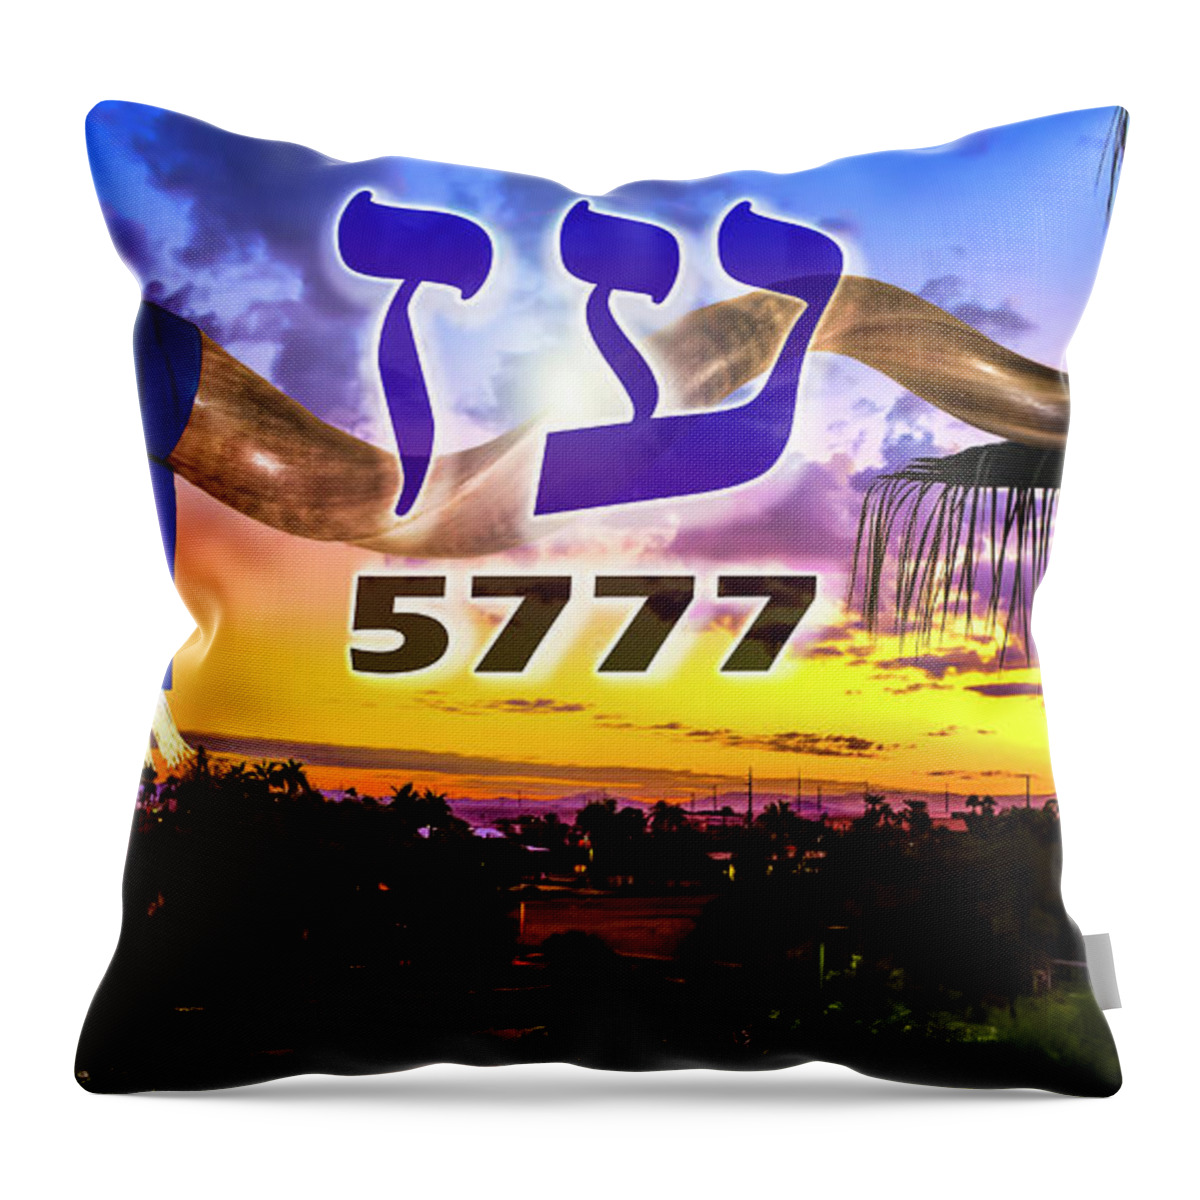 Rosh Hashanah Throw Pillow featuring the photograph Rosh Hashanah 5777 by Brian Tada